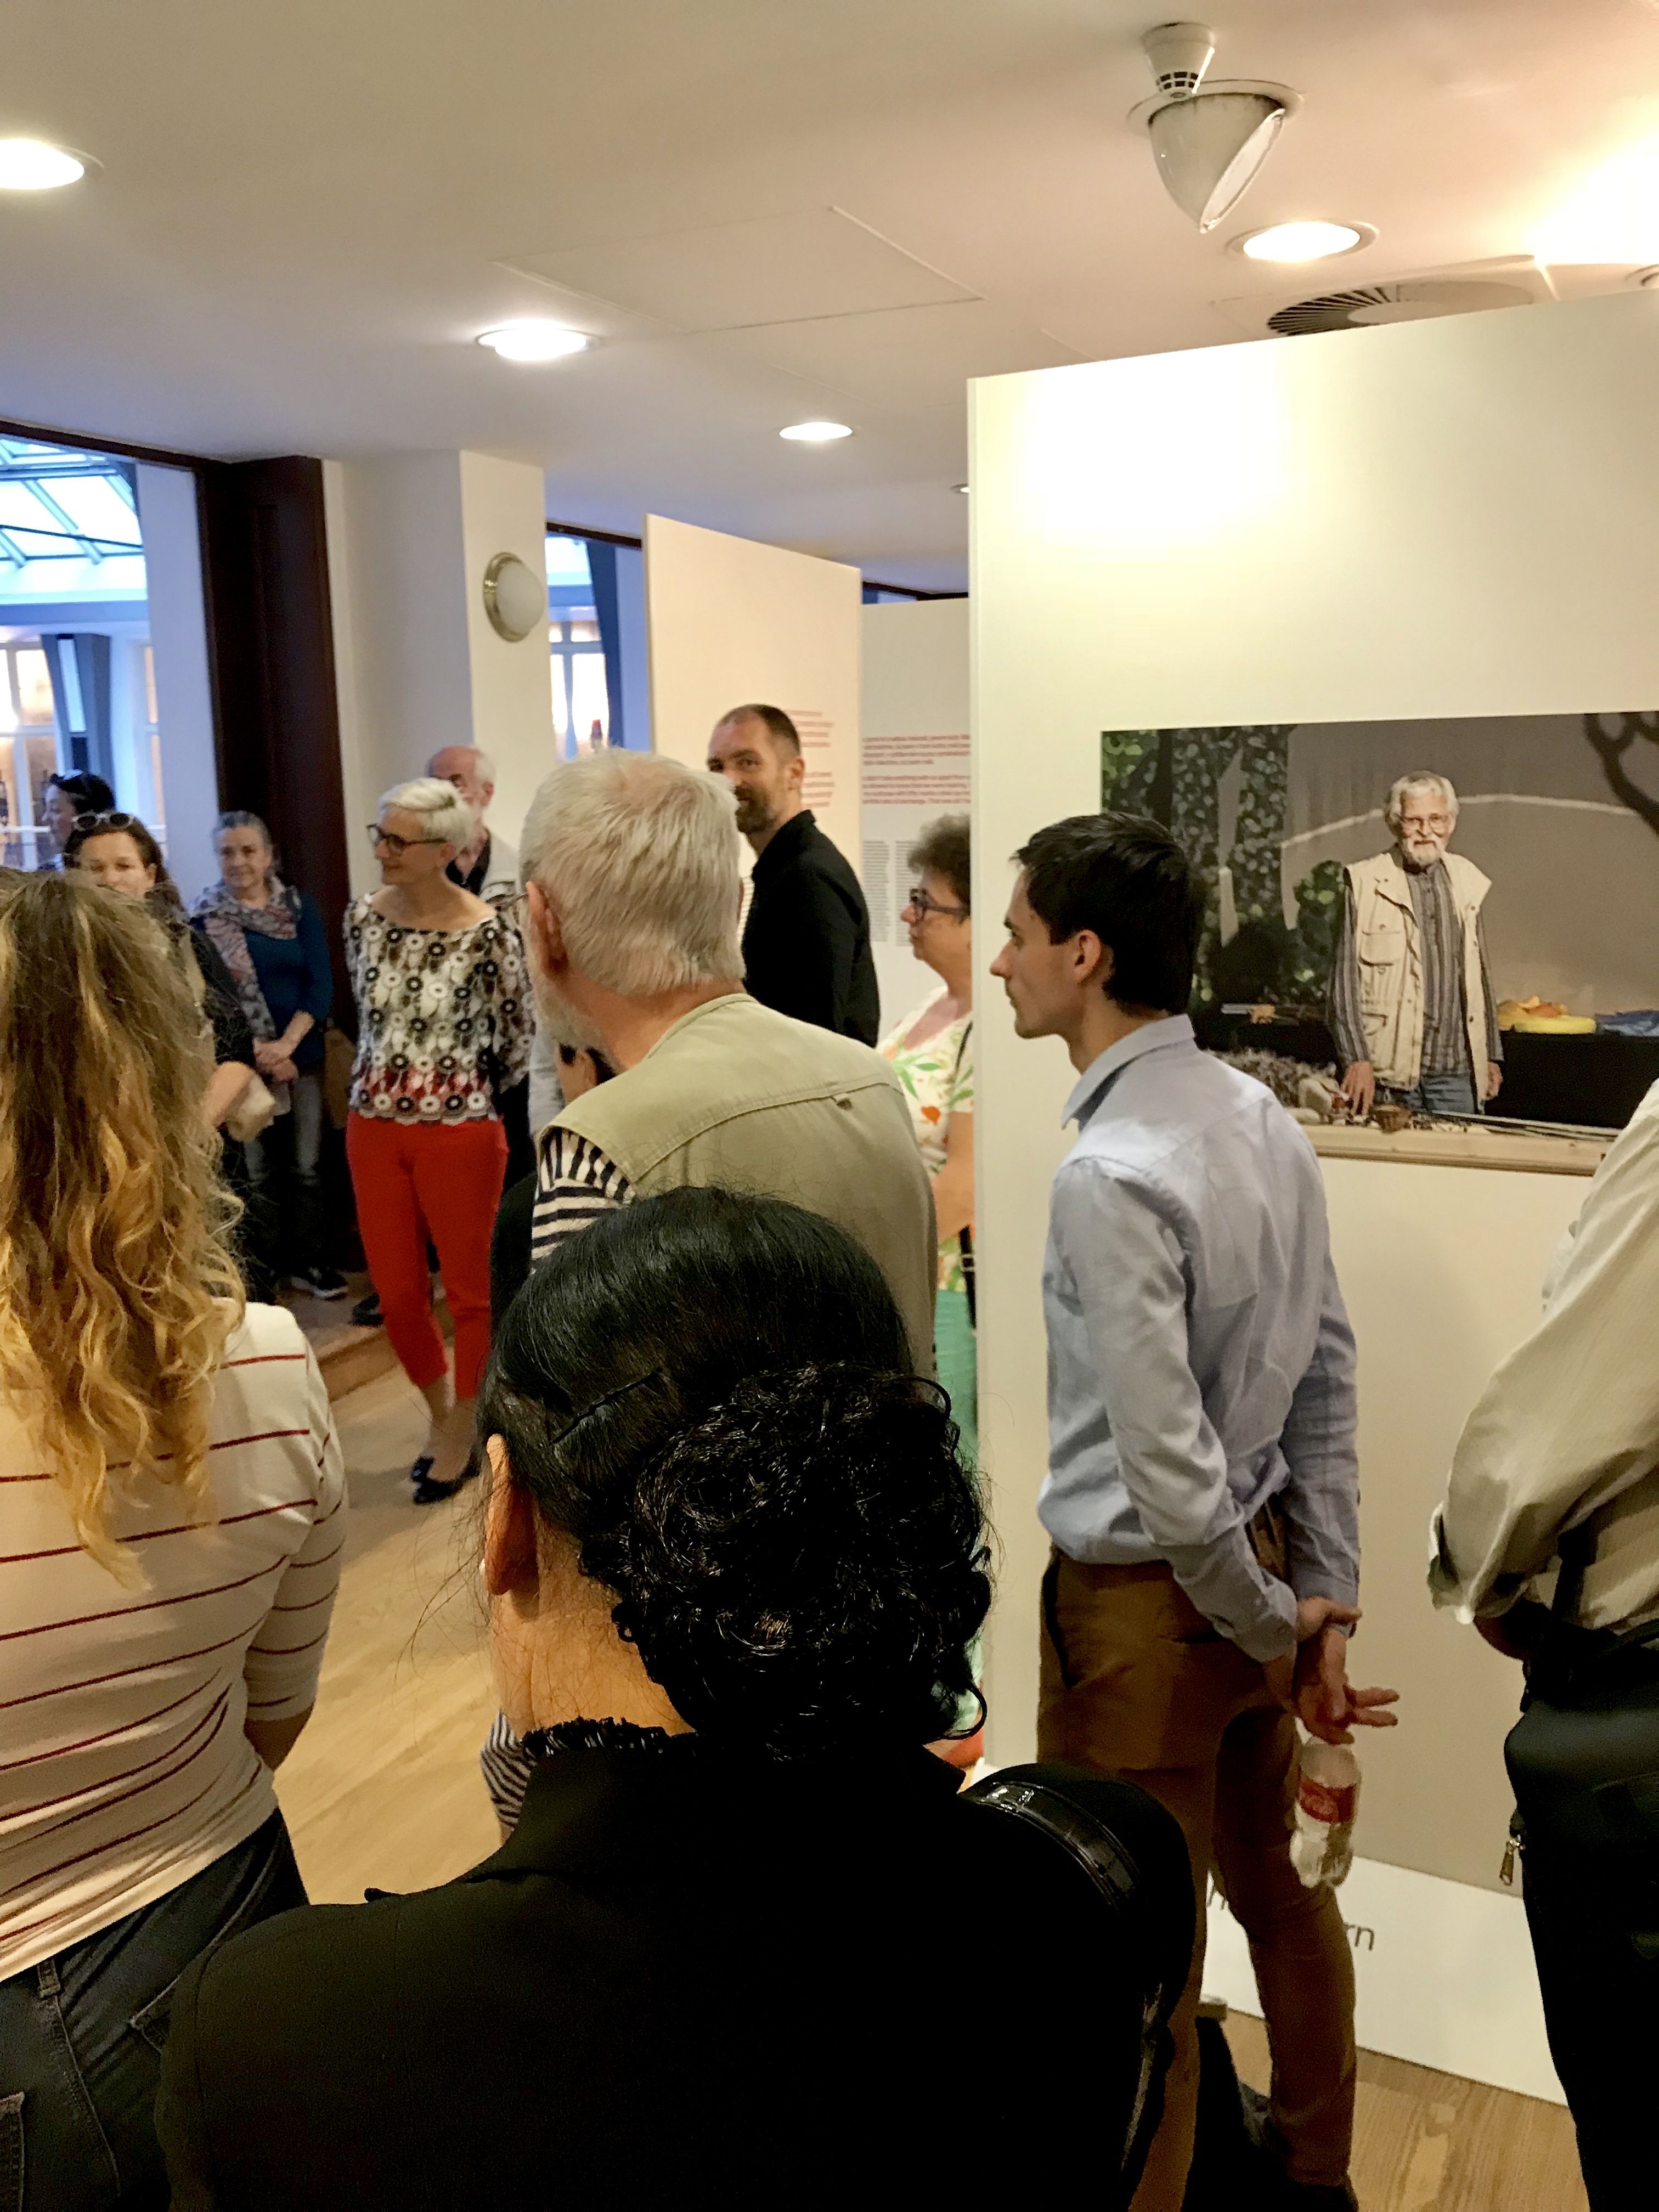 Am 10.04. 2018 hat in der Galerie kritiku die kommentierte Führung stattgefunden. Durch die Ausstellung hat die anwesenden Gäste die Fotografin Iren Stehli geführt.